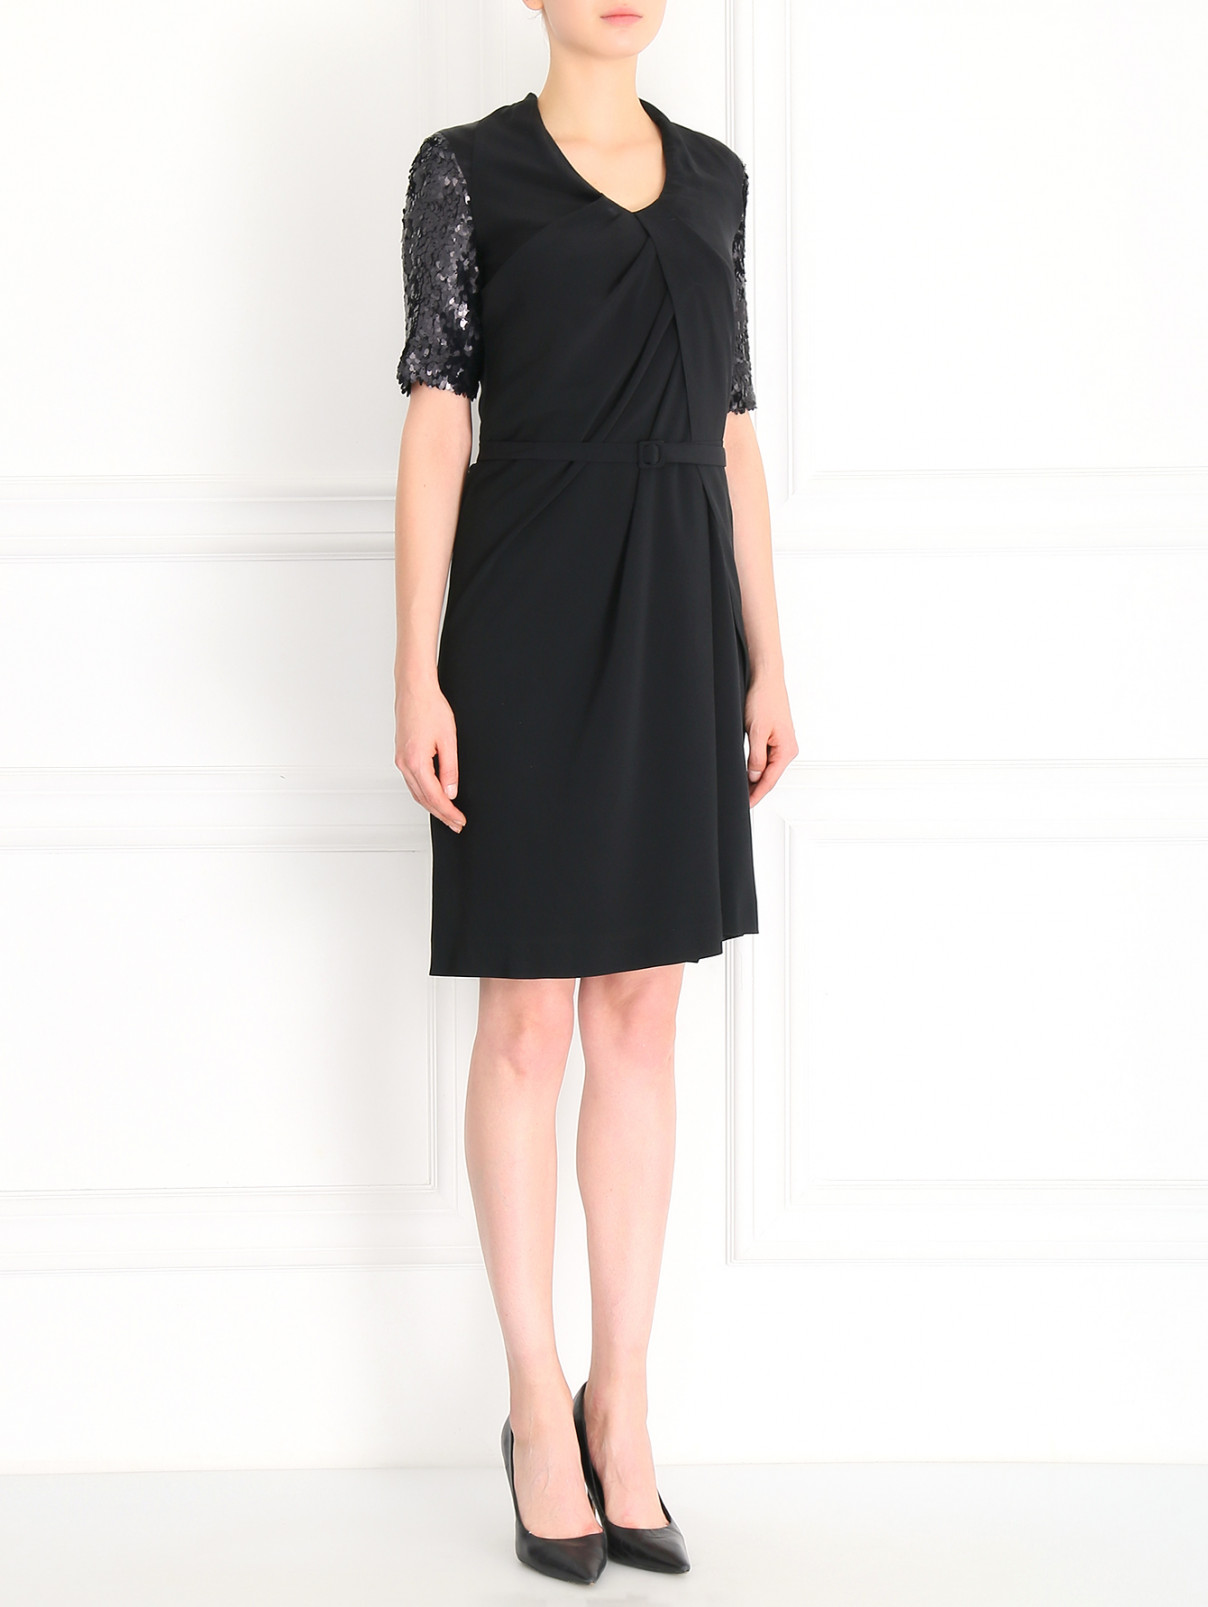 Платье из шелка декорированное пайетками Antonio Marras  –  Модель Общий вид  – Цвет:  Черный